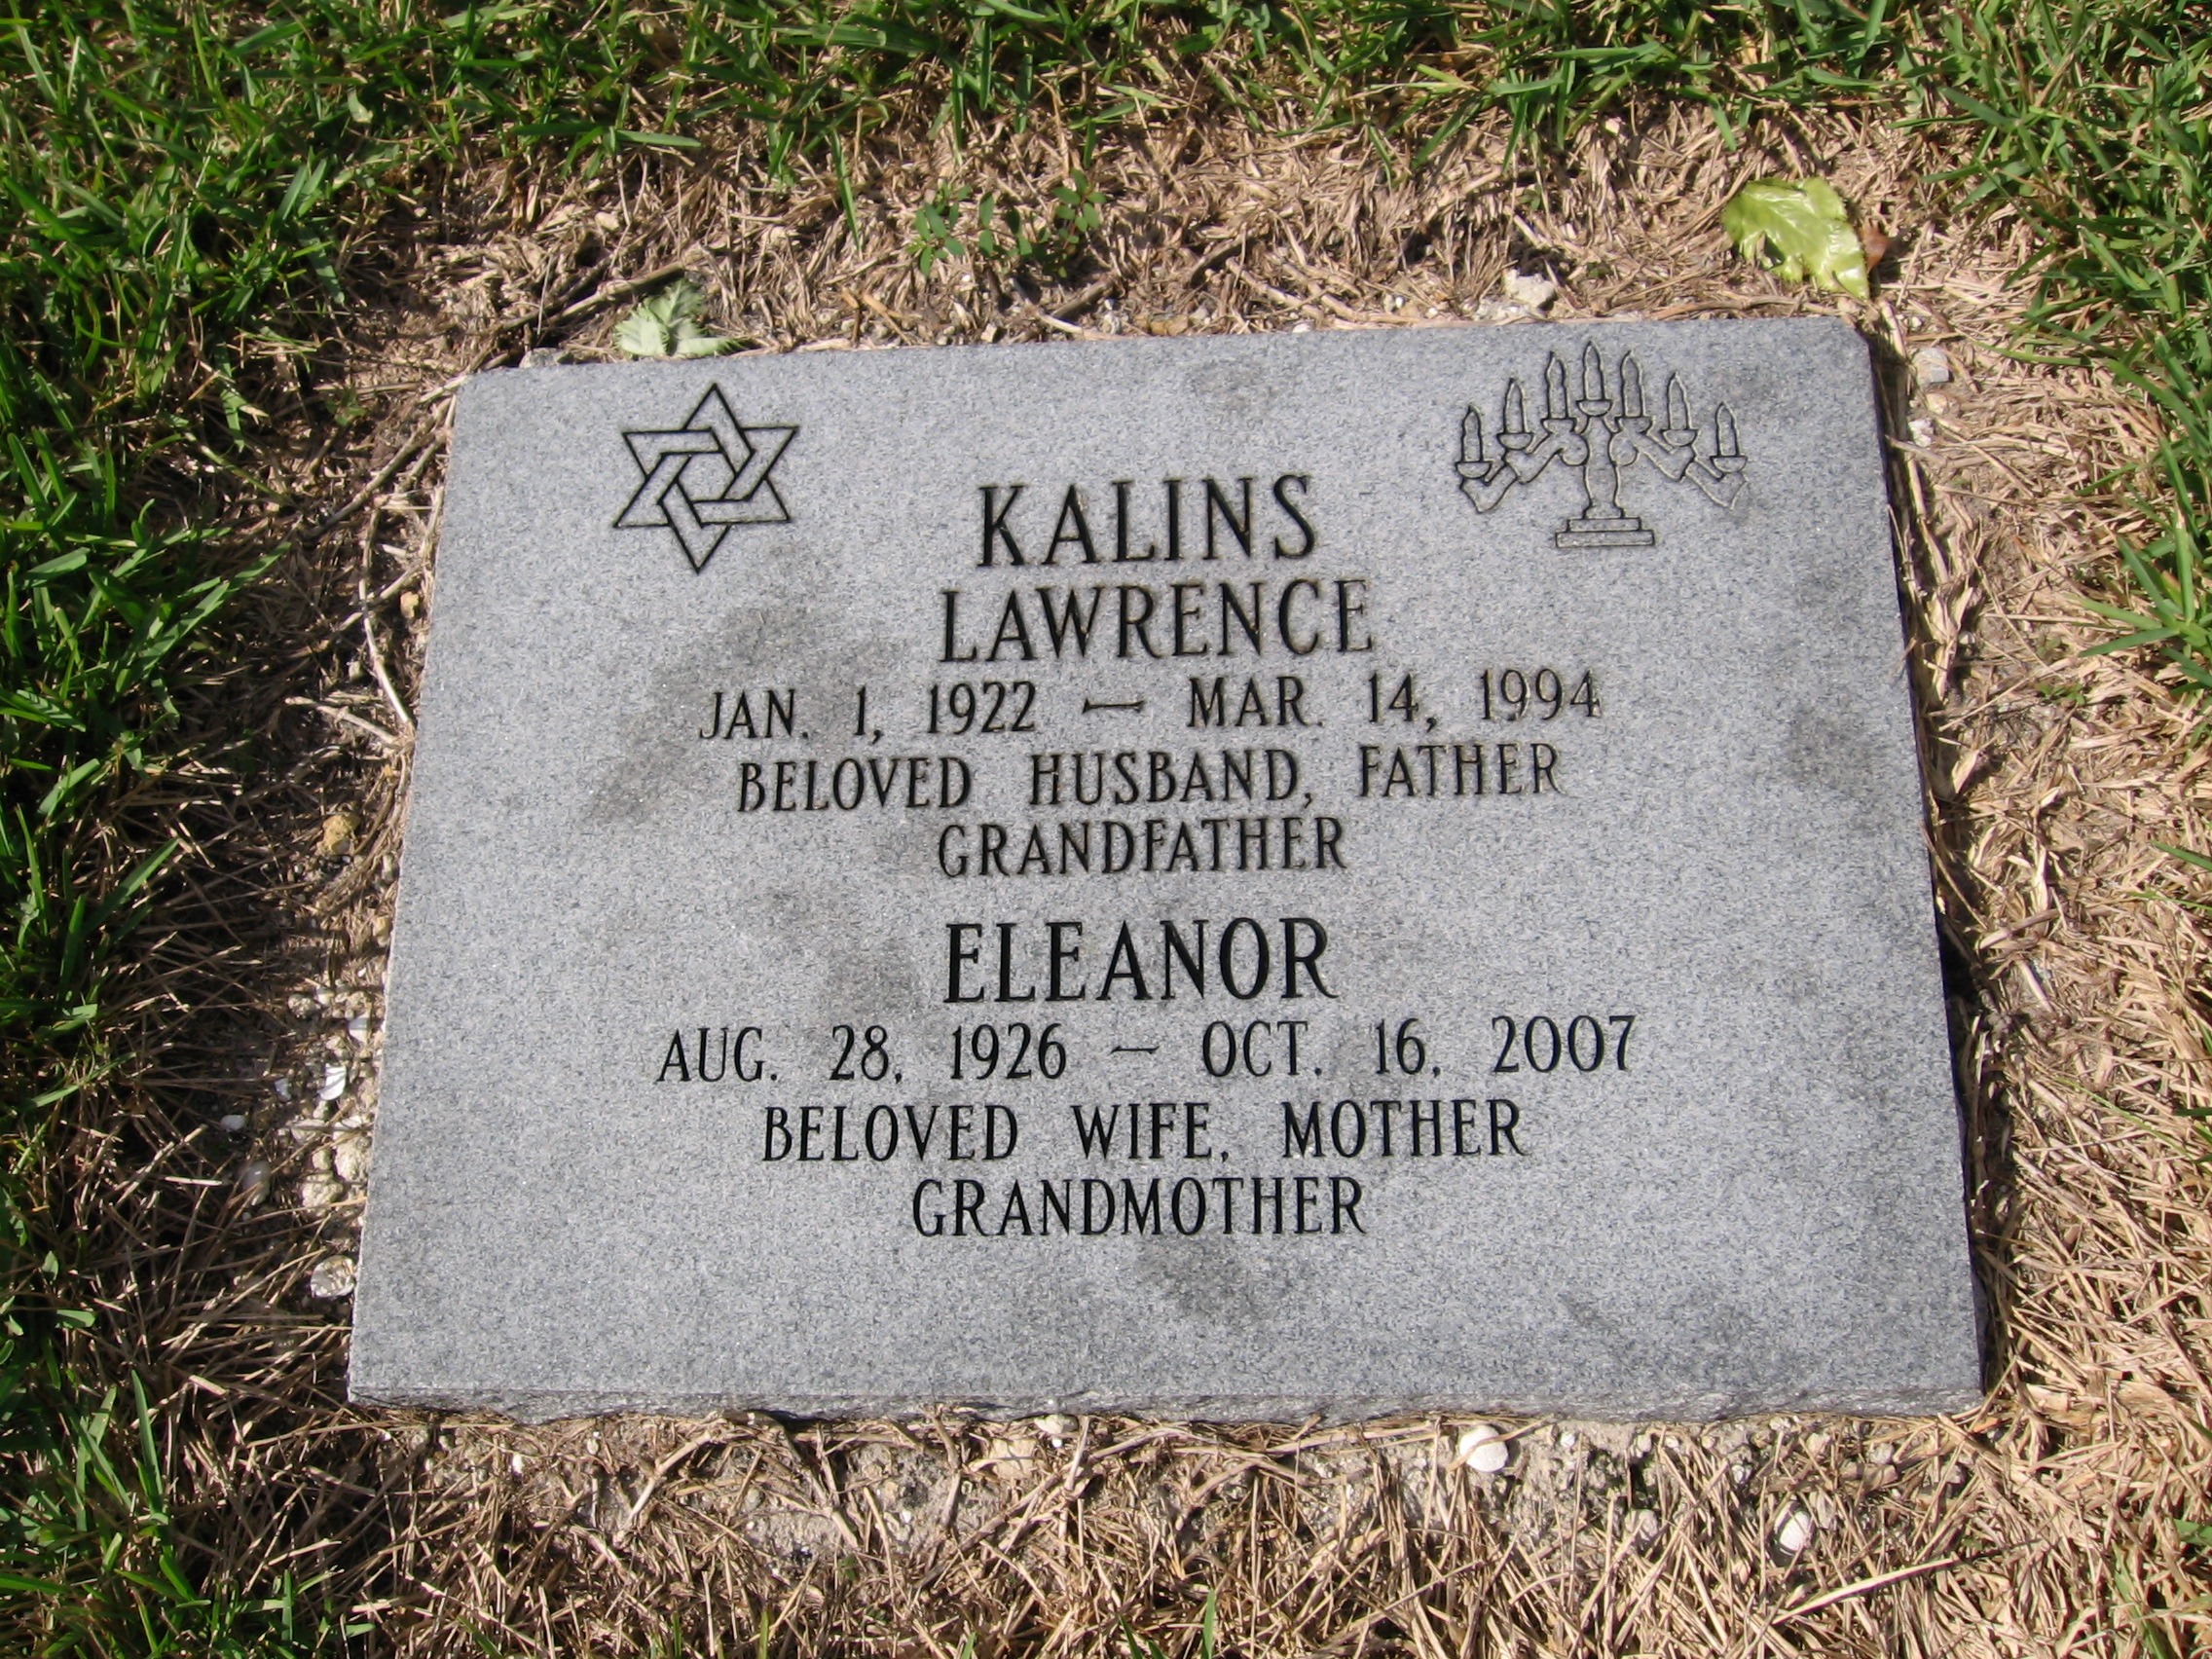 Eleanor Kalins